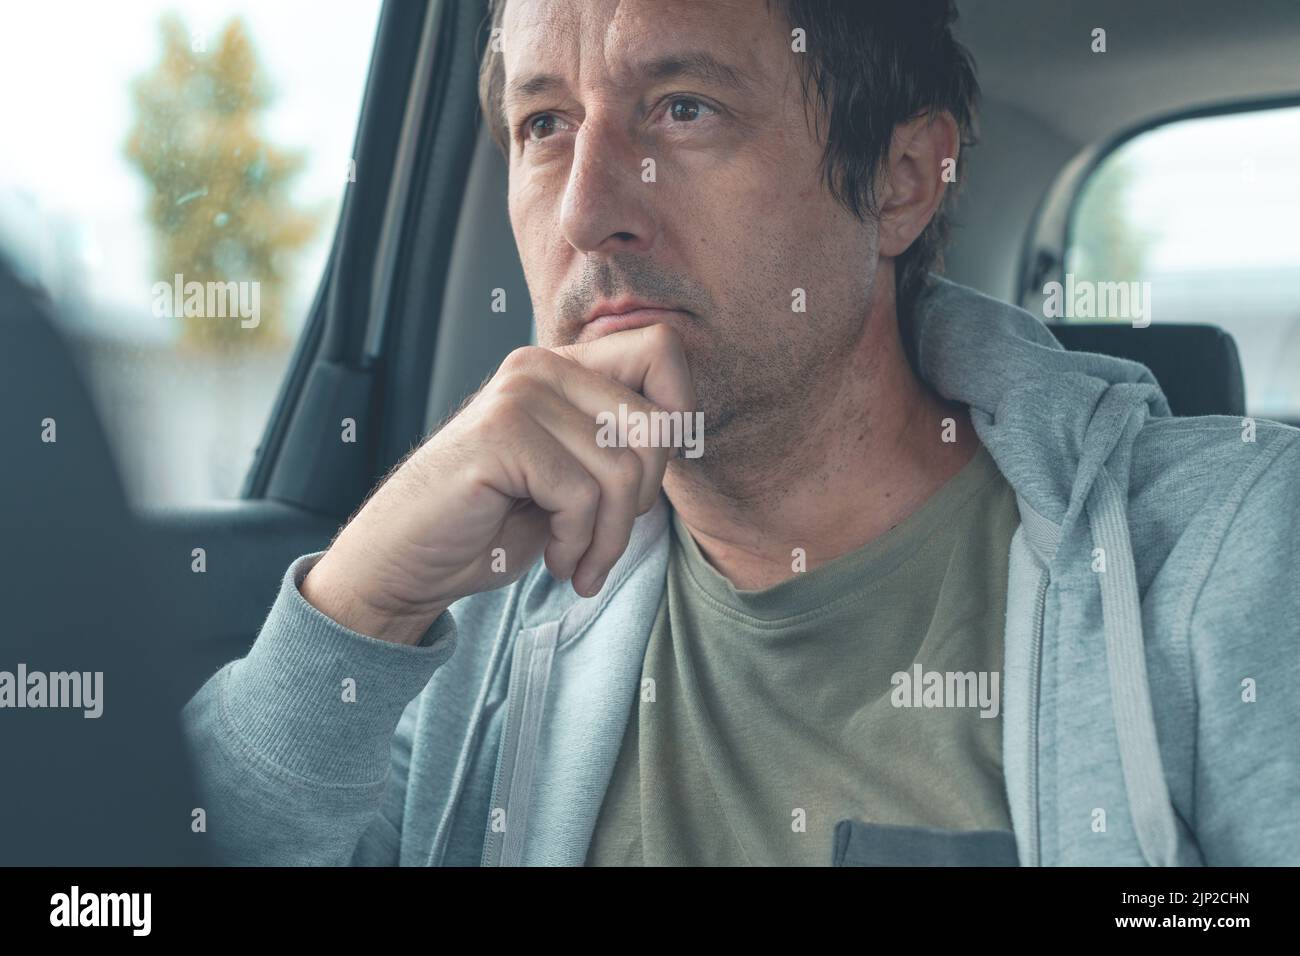 Homme contemplatif portant un sweat-shirt gris clair avec un sweat à capuche assis à l'arrière de la voiture et pensant, concentration sélective Banque D'Images